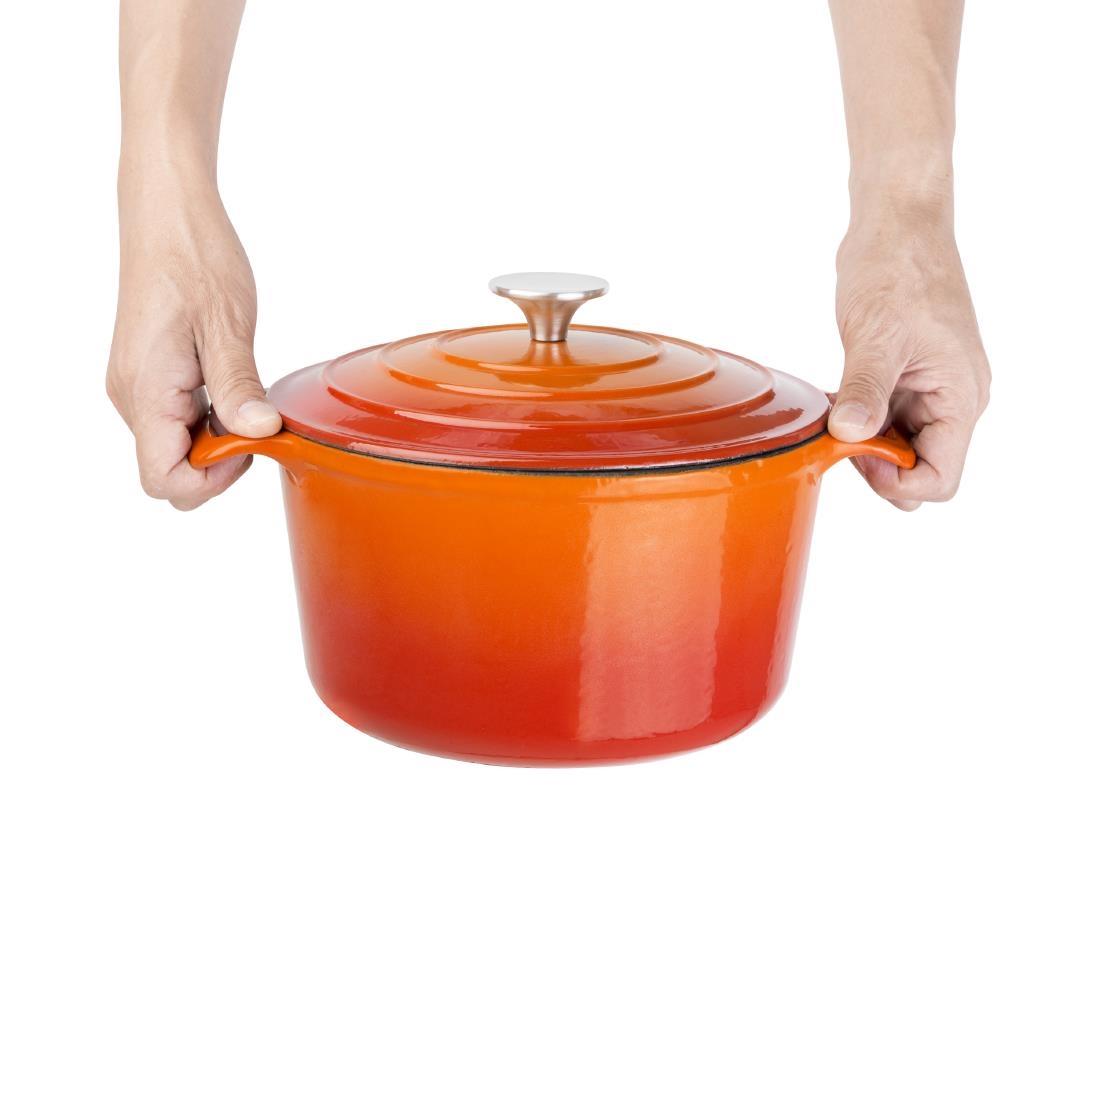 Vogue Orange Round Casserole Dish 3.2Ltr - GH302  - 5